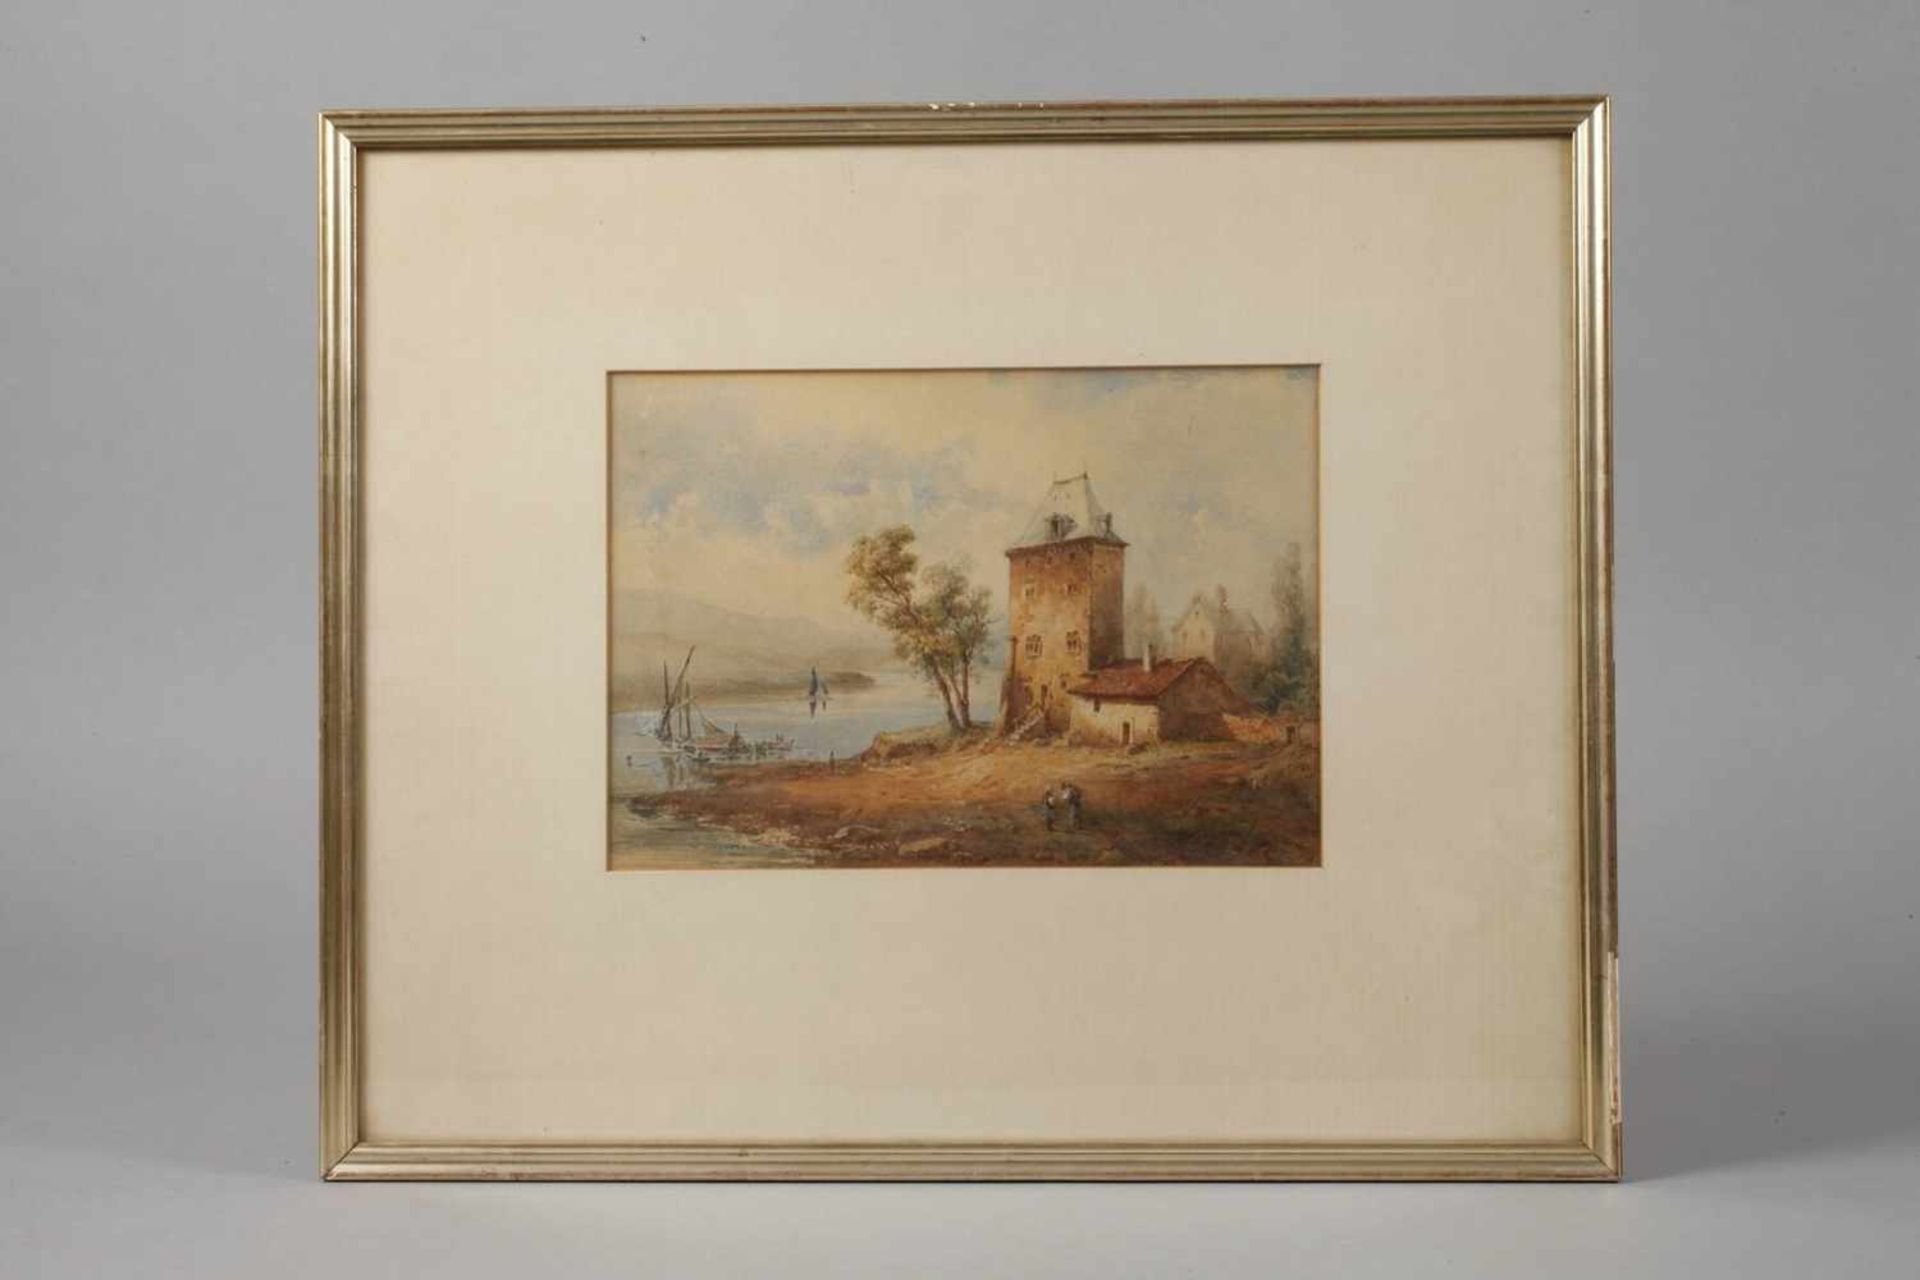 Paar Zeichnungen Wohnturm am Fluss und einsame Mühle, Aquarelle, 2. Hälfte 19. Jh., ein Blatt - Bild 2 aus 4